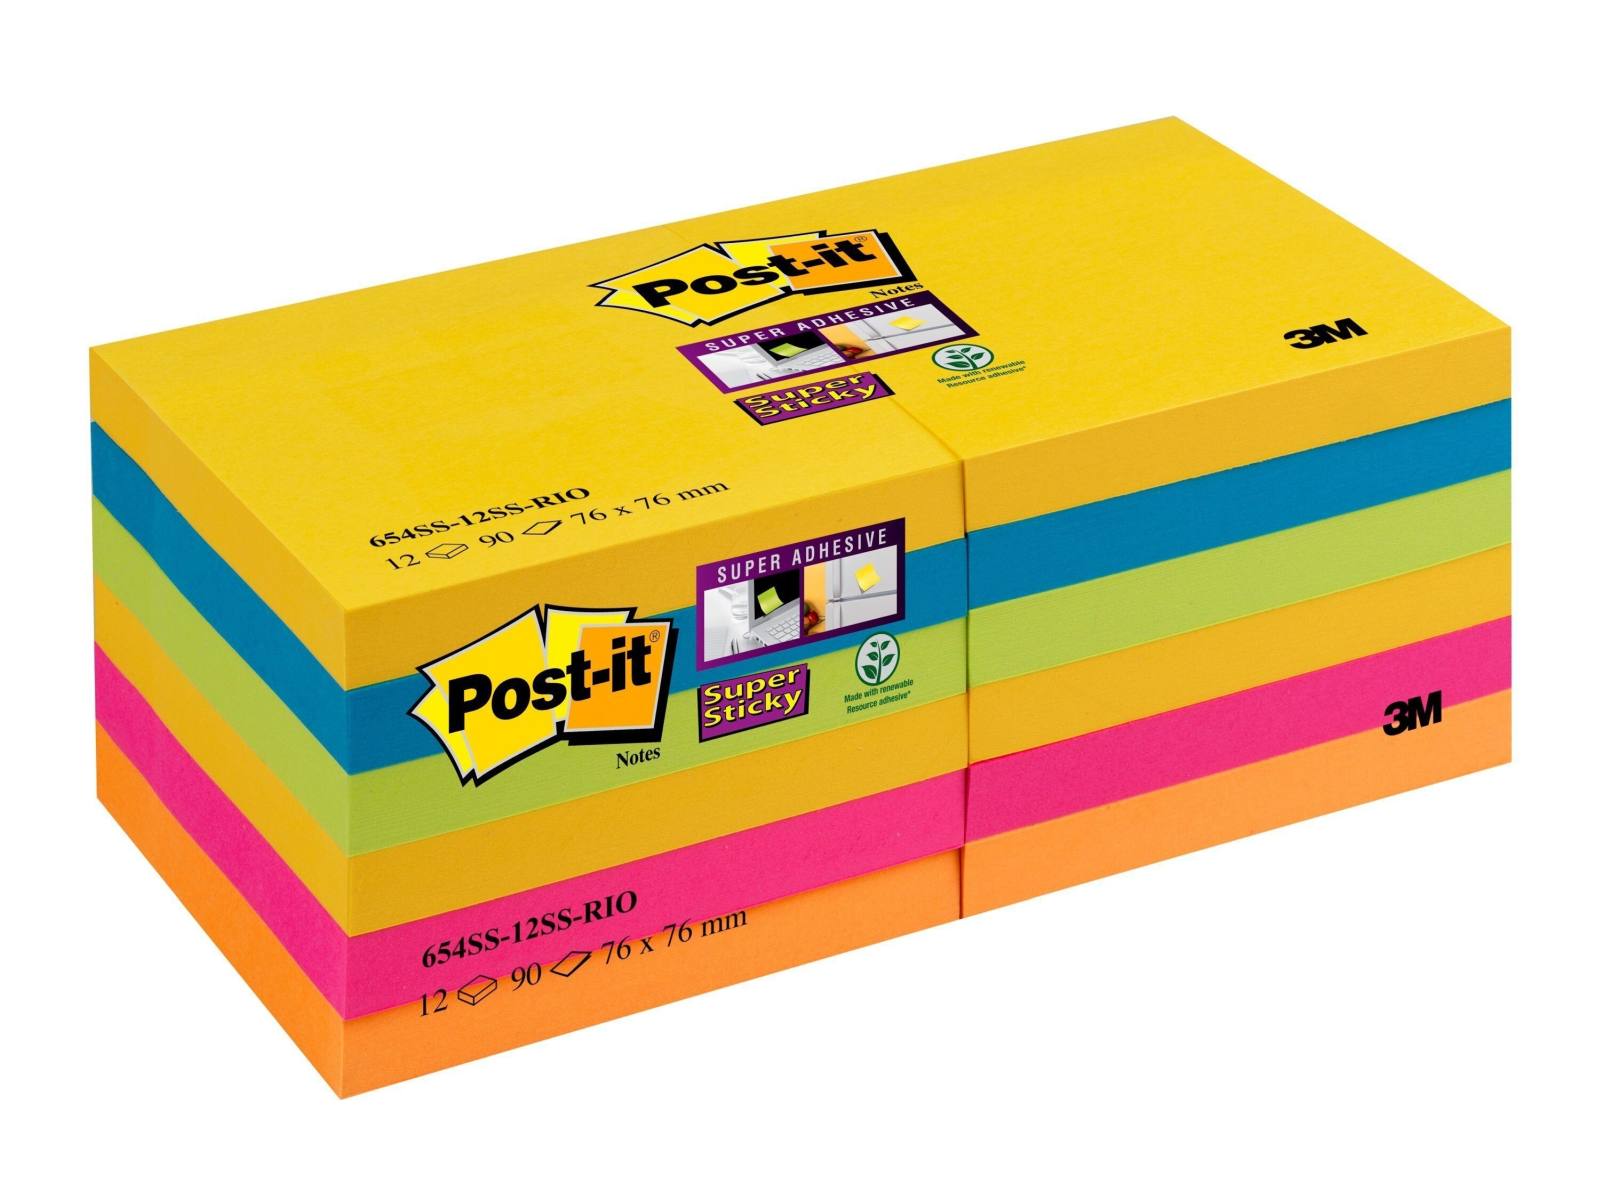 3M Post-it Super Sticky Notes 654-12SS-RIO 12 blocs de 90 feuilles chacun, collection Rio de Janeiero, 4x ultra-jaune, 2x ultra-bleu, 2x ultra-rose, 2x vert fluo, 2x orange fluo, 76 mm x 76 mm, certifié PEFC